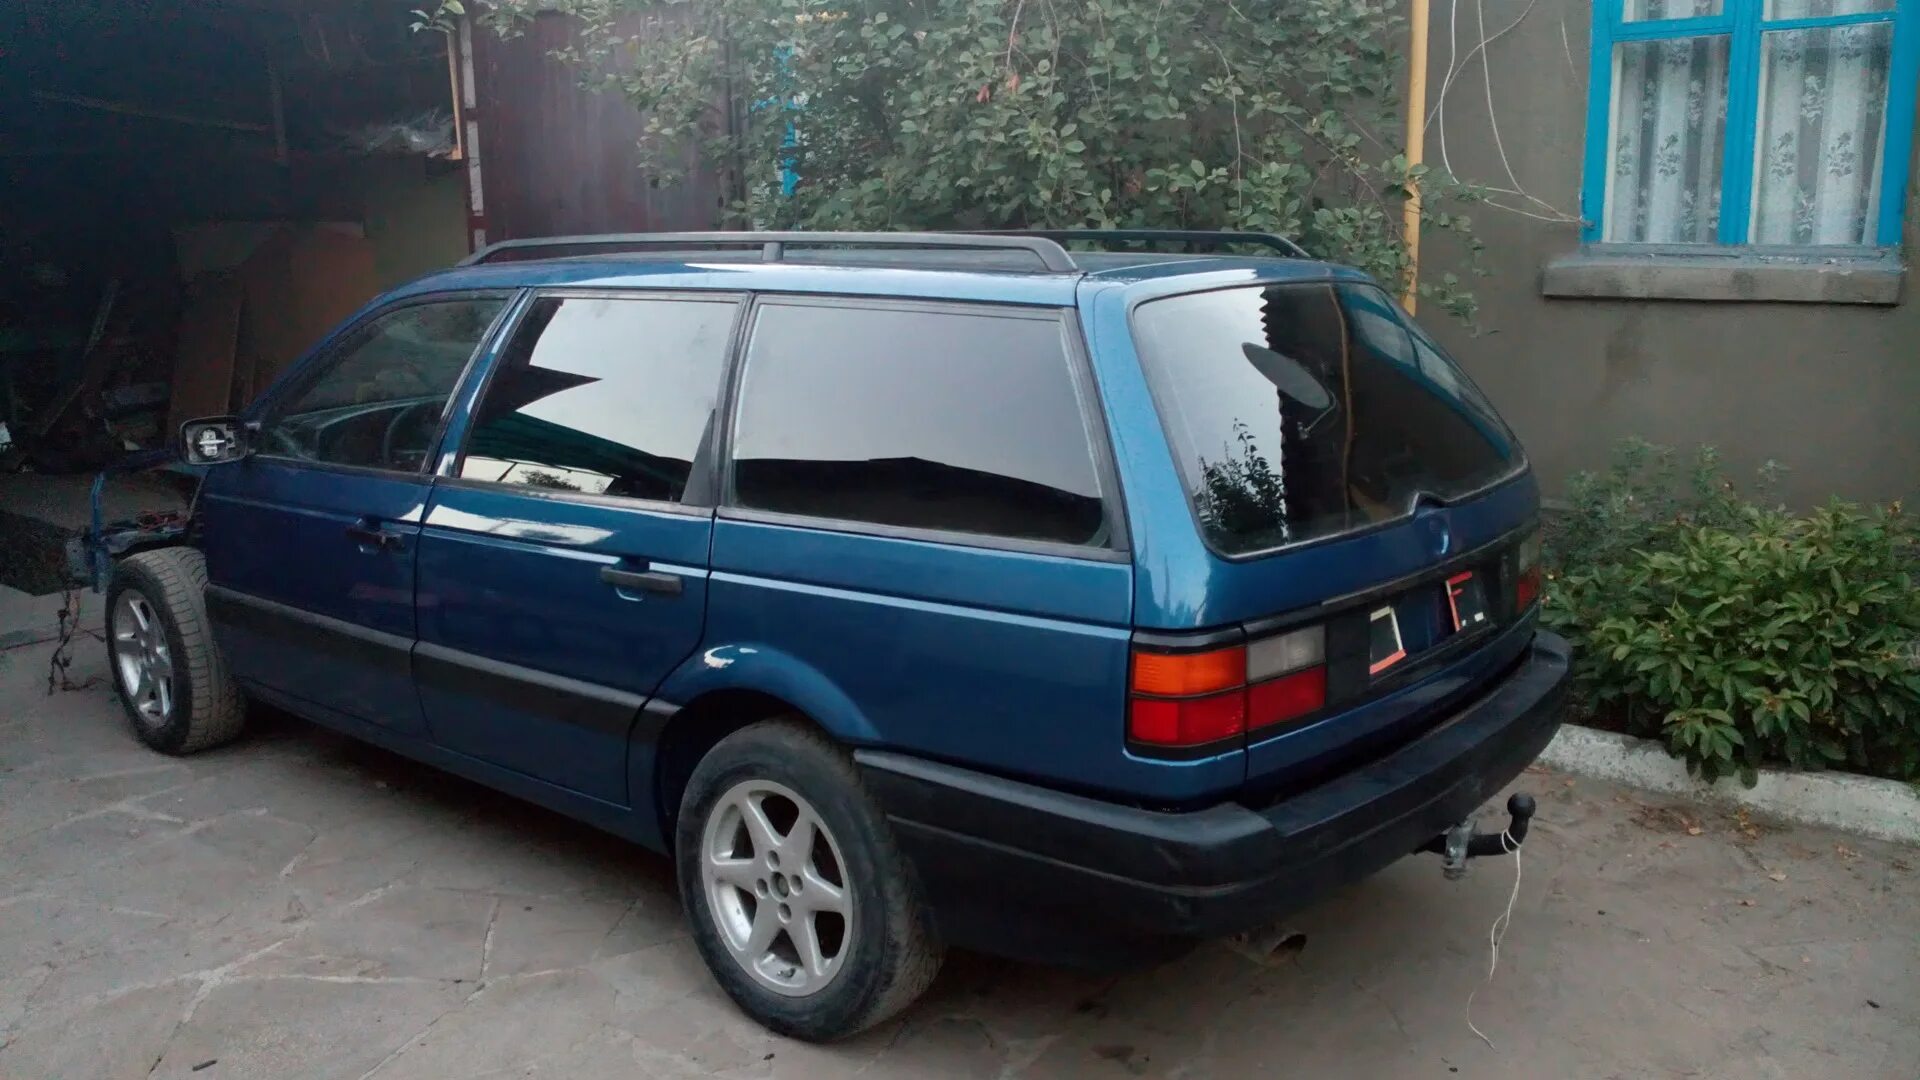 Volkswagen Passat b3 универсал 1993. Volkswagen Passat b3 1990 универсал. Фольксваген Пассат б3 универсал синий. Volkswagen Passat b3 универсал синий. Машину фольксваген пассат б3